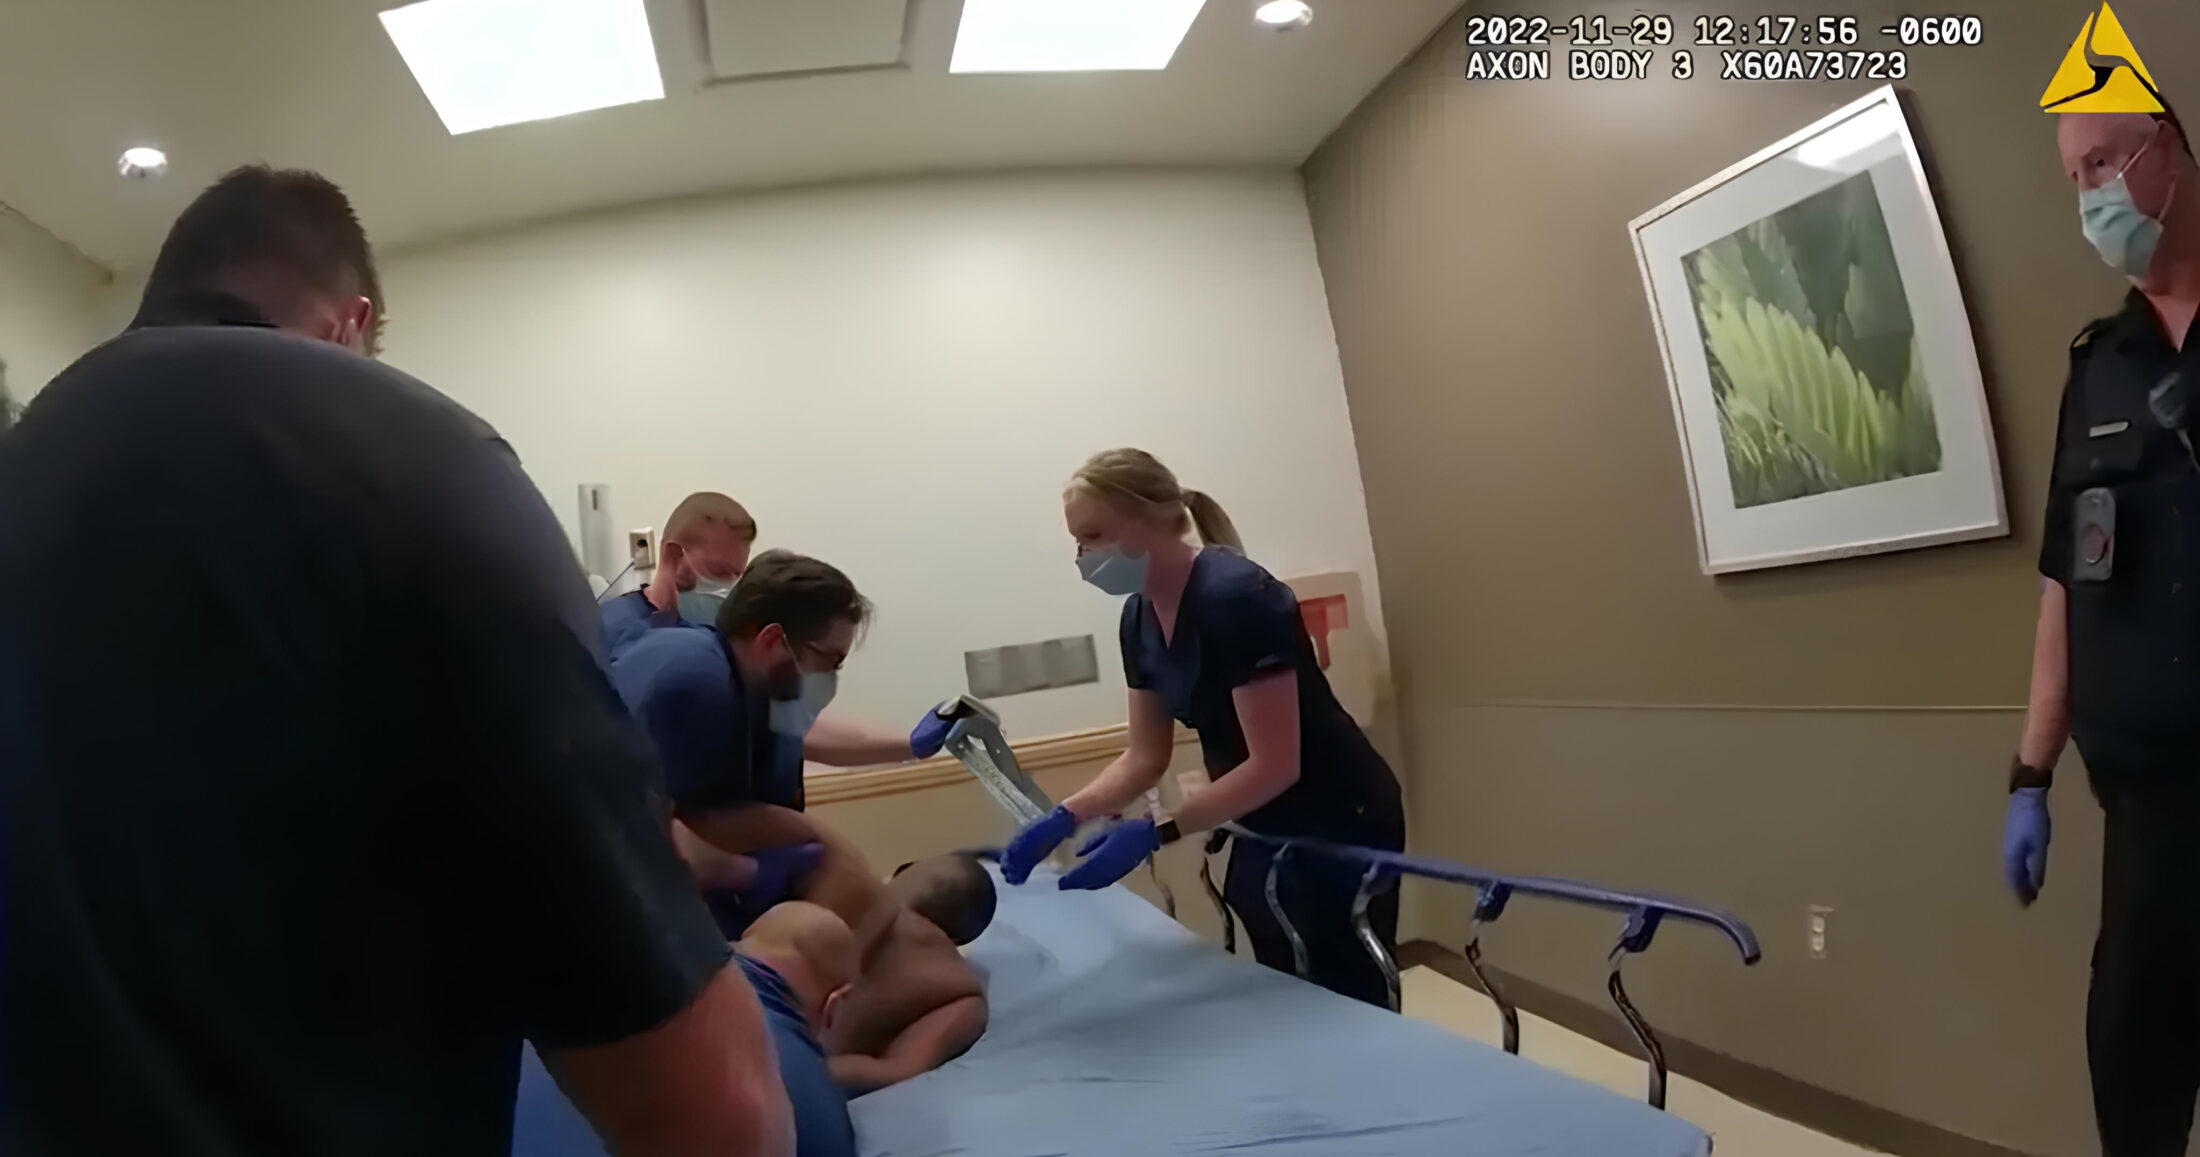 Tο βίντεο αποδεικνύει ότι Νοτς ήταν σε καλή φυσική κατάσταση, μέχρι που οι αστυνομικοί «περιόρισαν την ικανότητά του να αναπνέει»